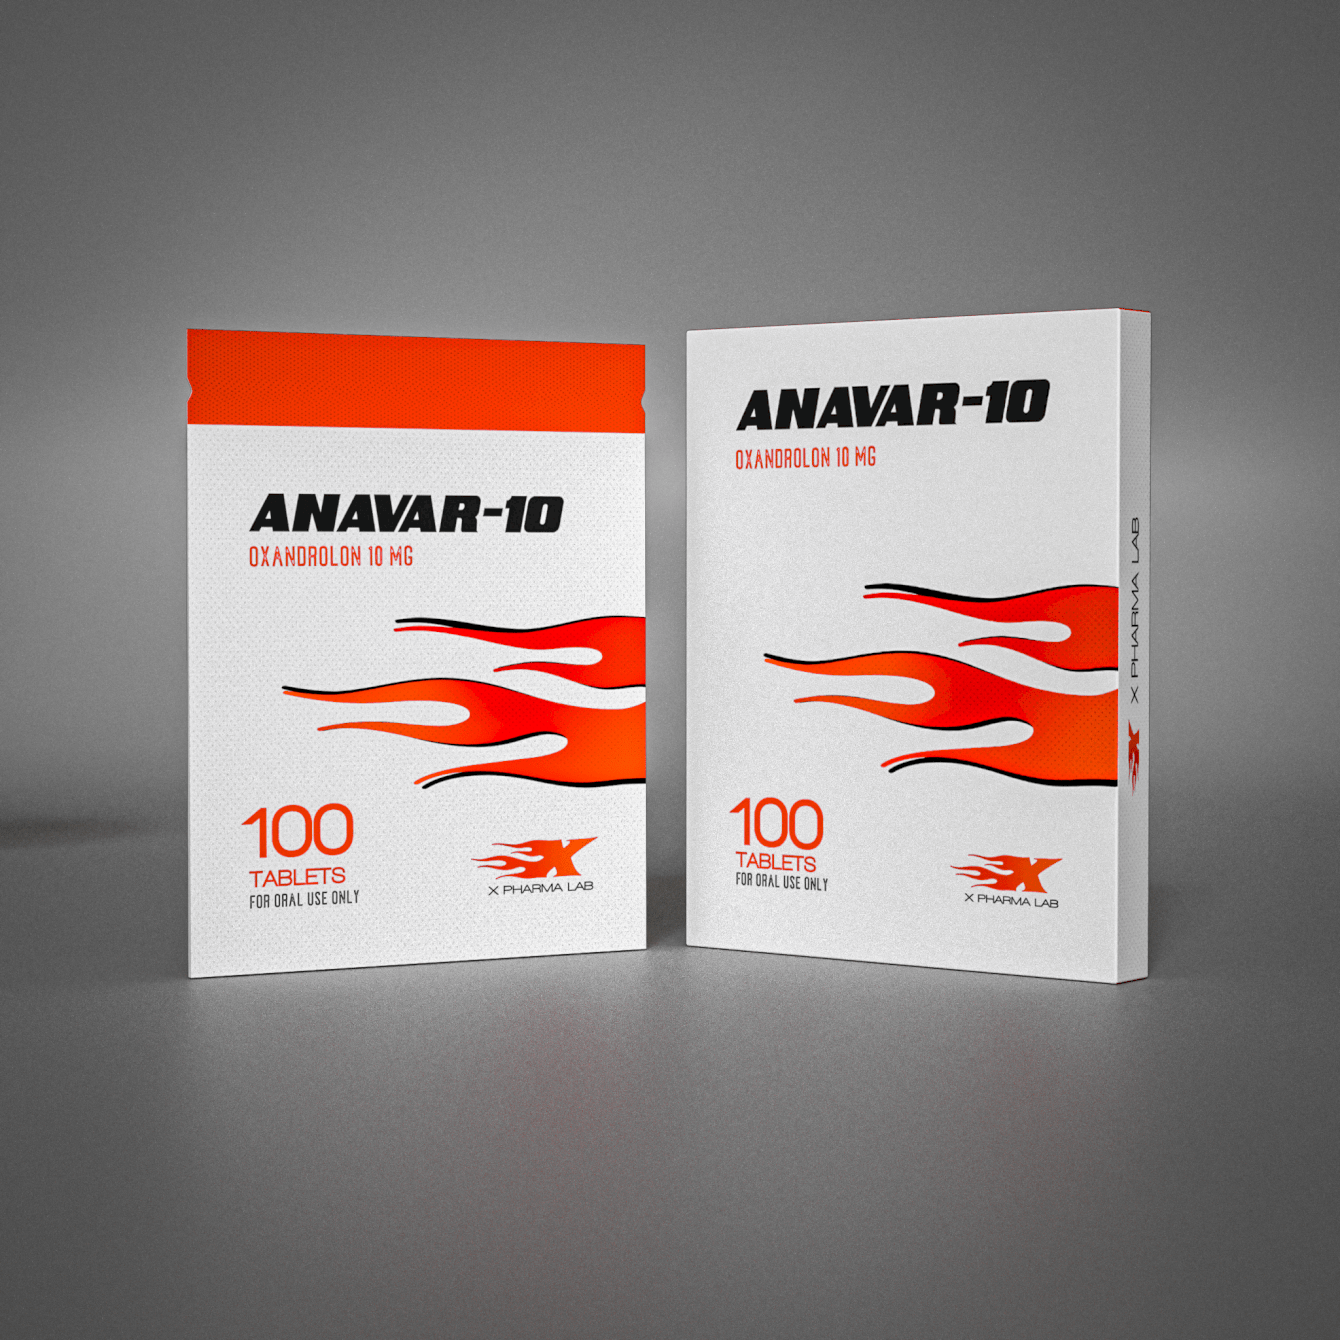 Anavar-10